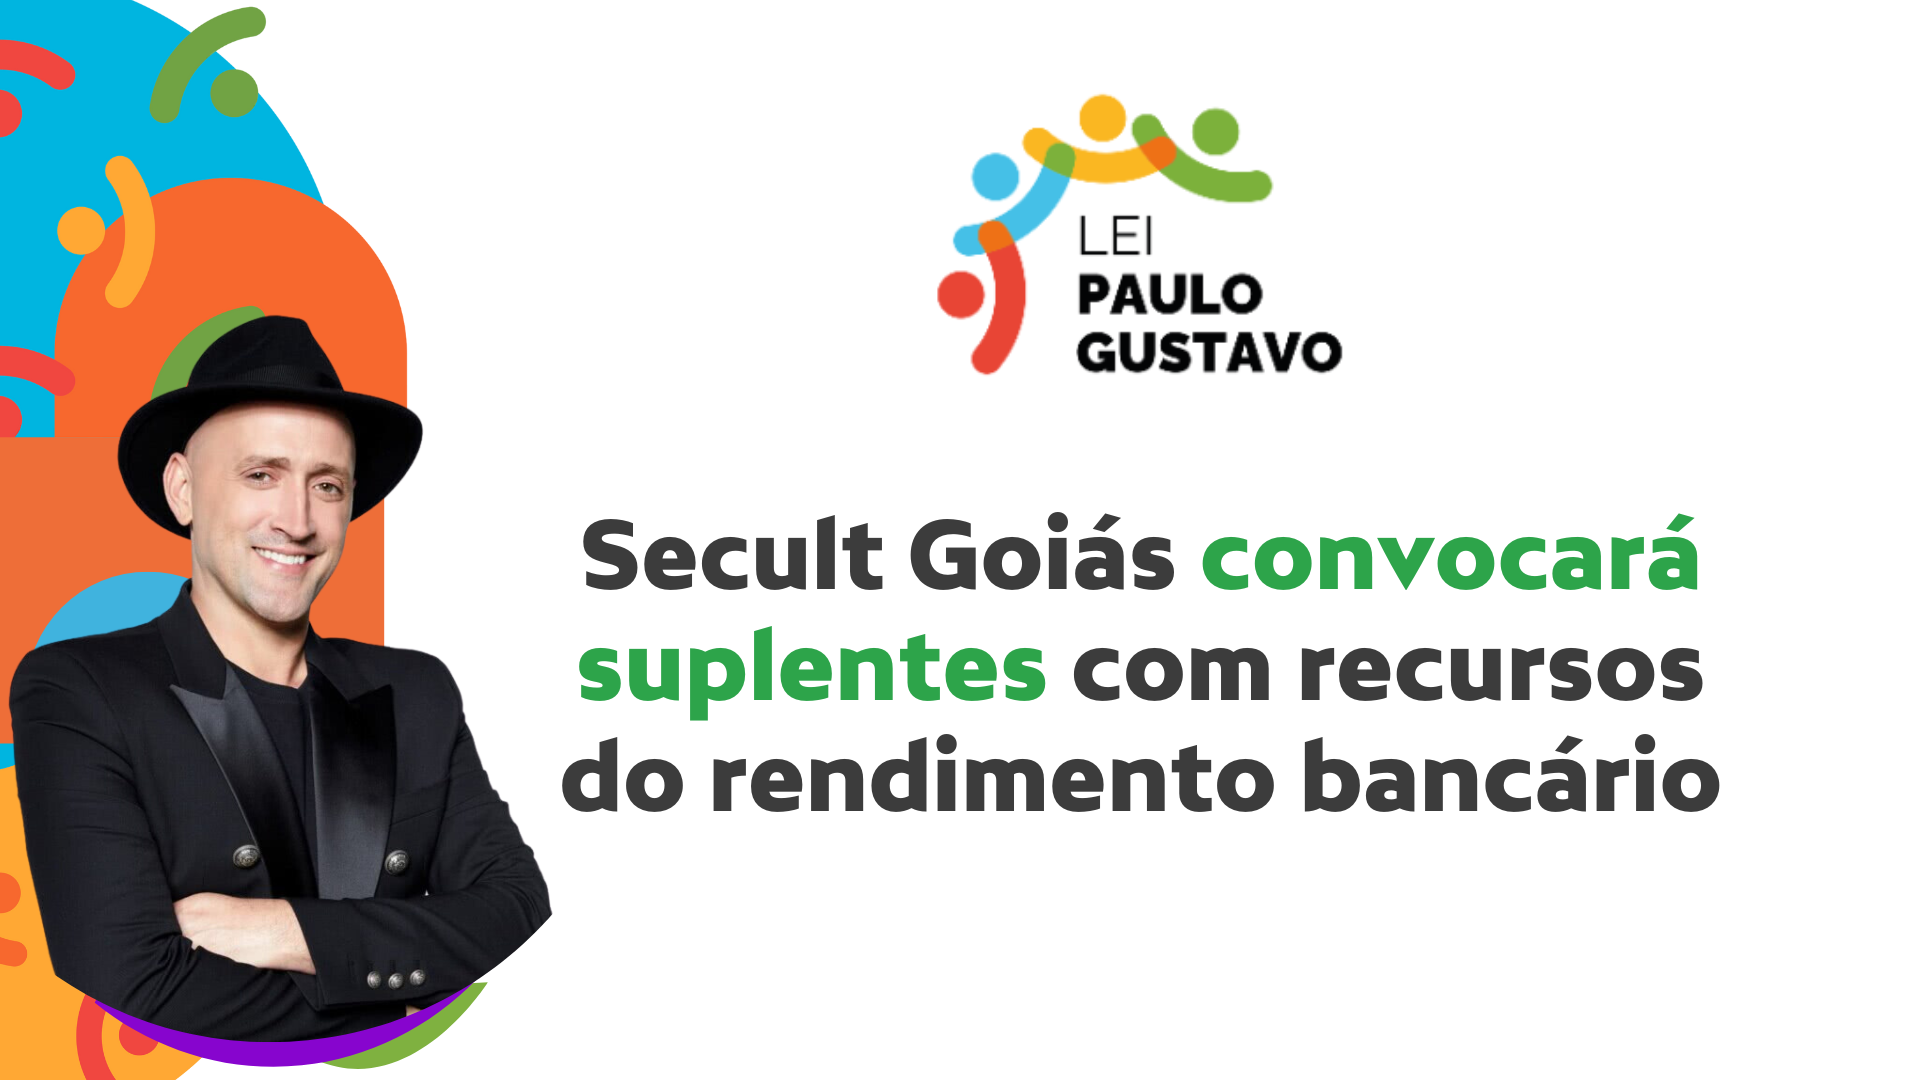 Secult Goiás vai convocar suplentes com recursos do rendimento da Lei Paulo Gustavo